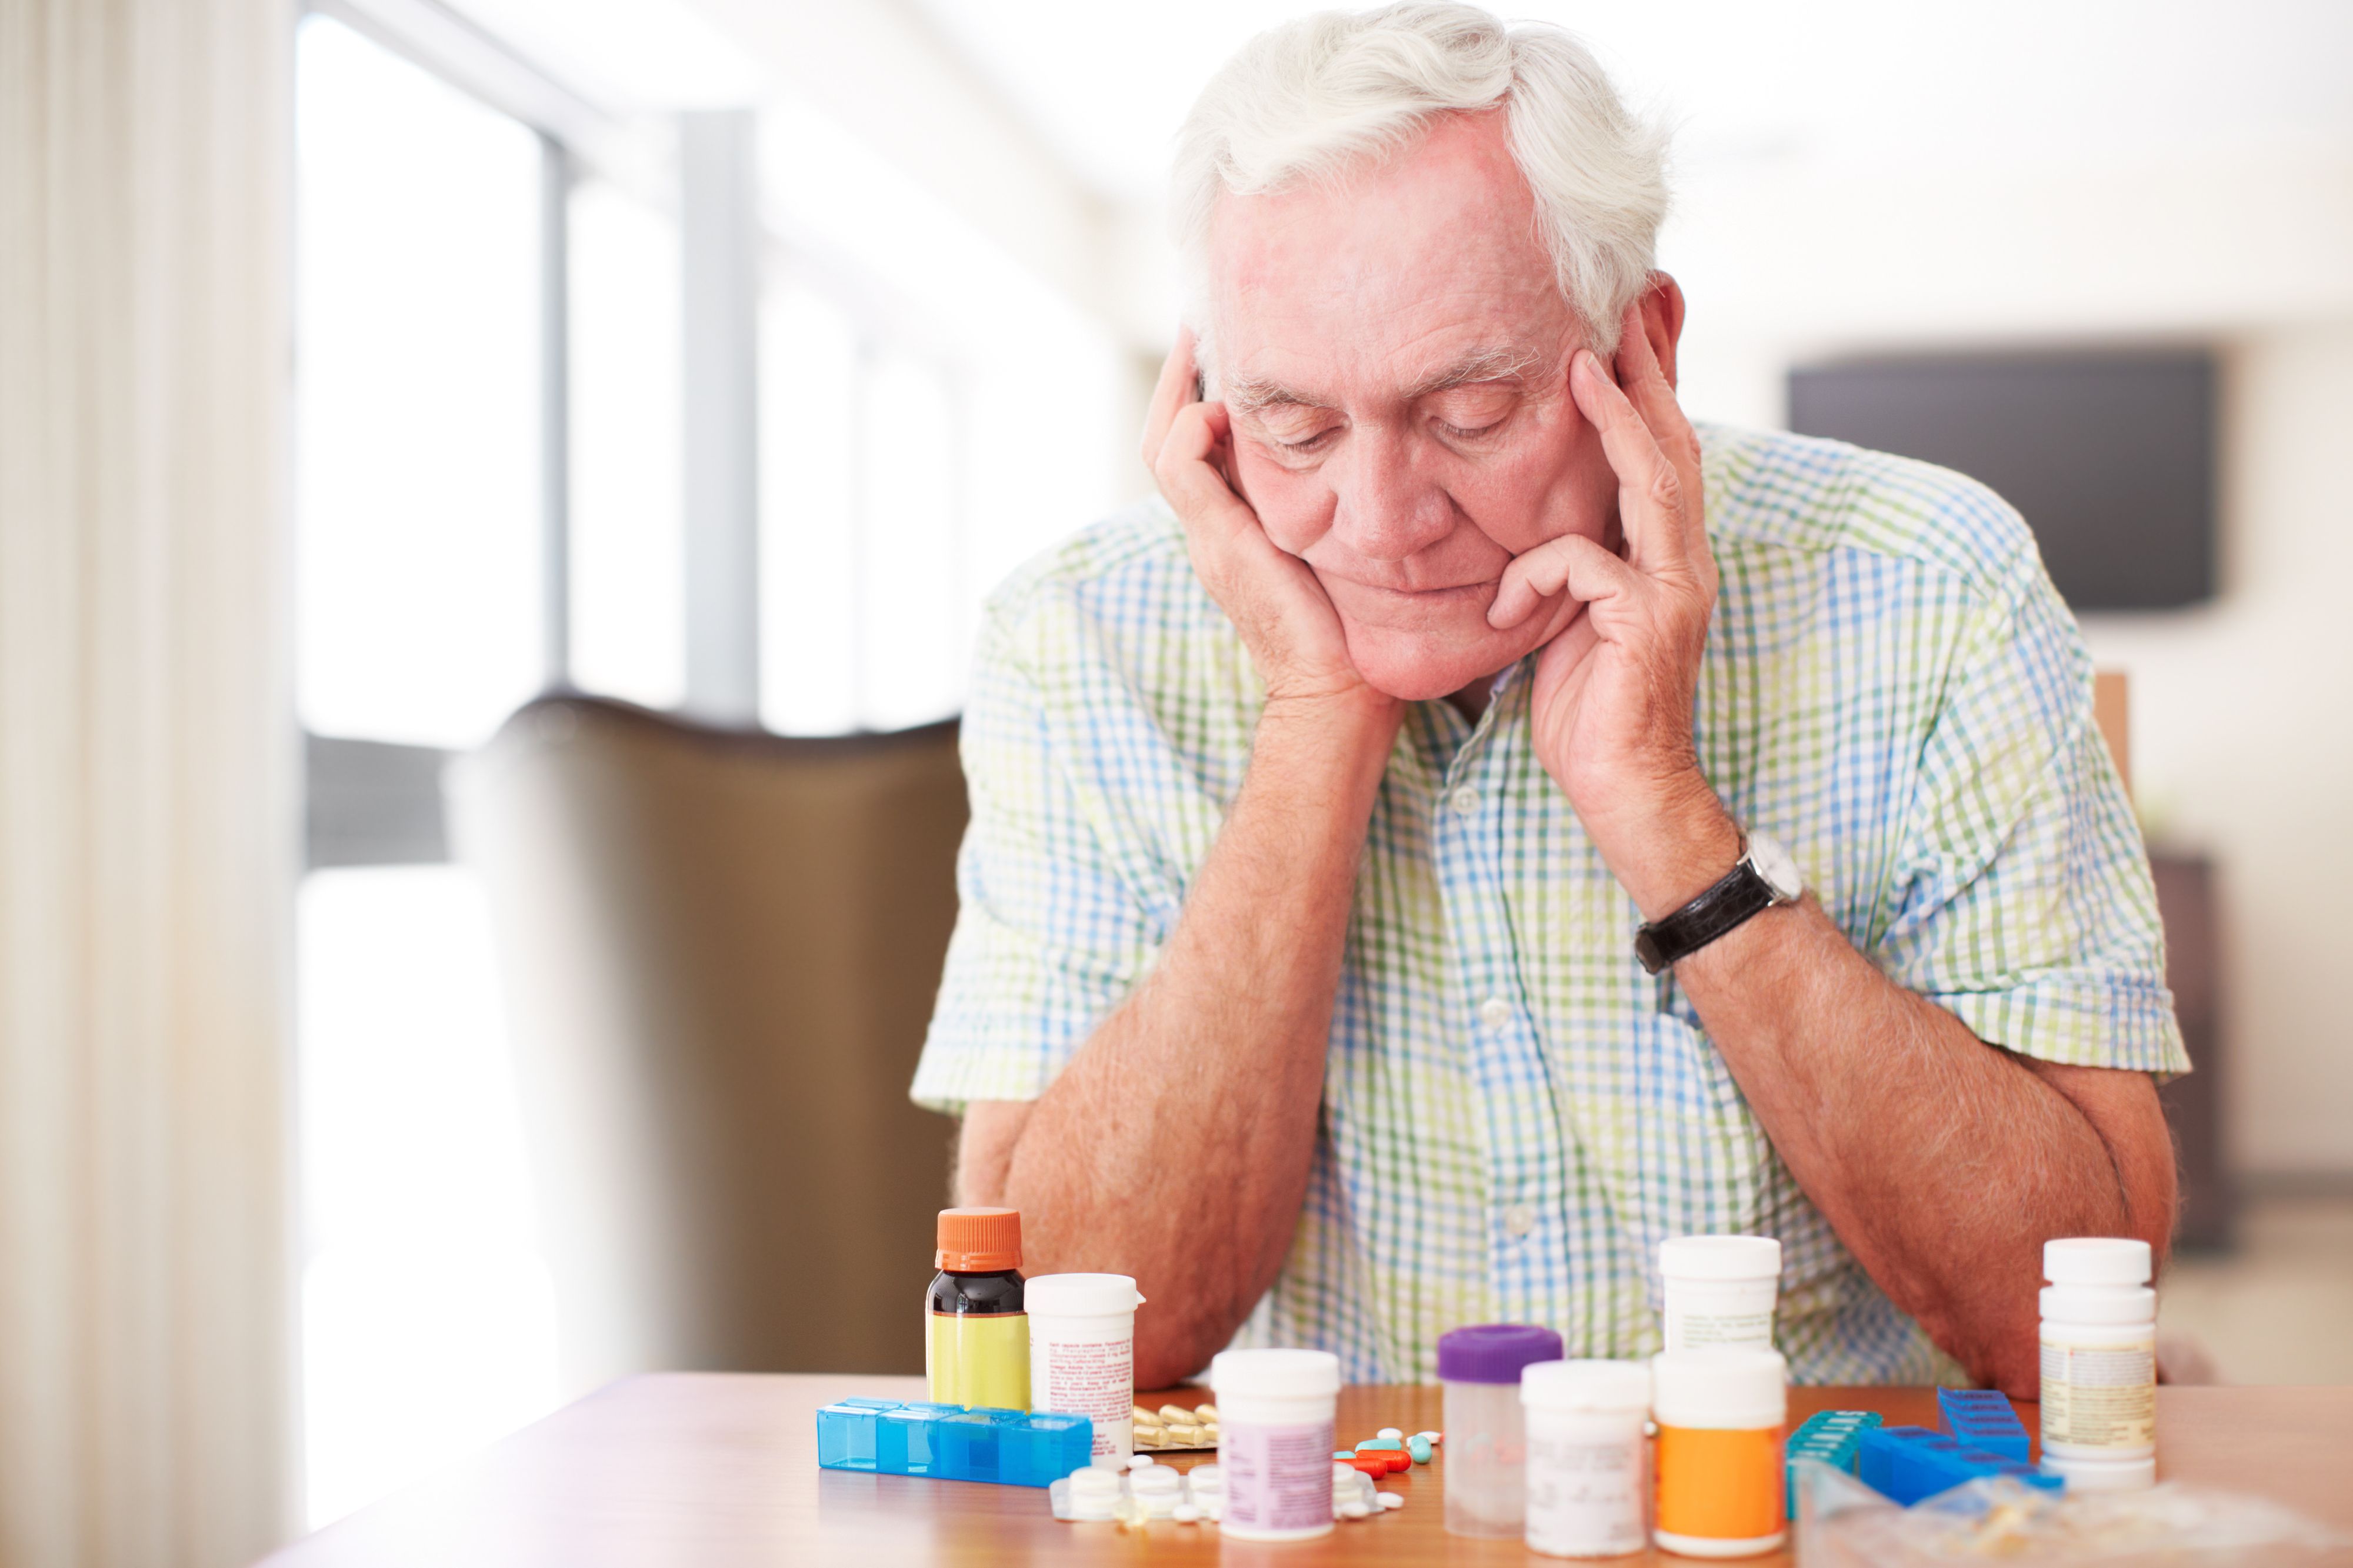 Trop de seniors se font prescrire des médicaments inappopriés